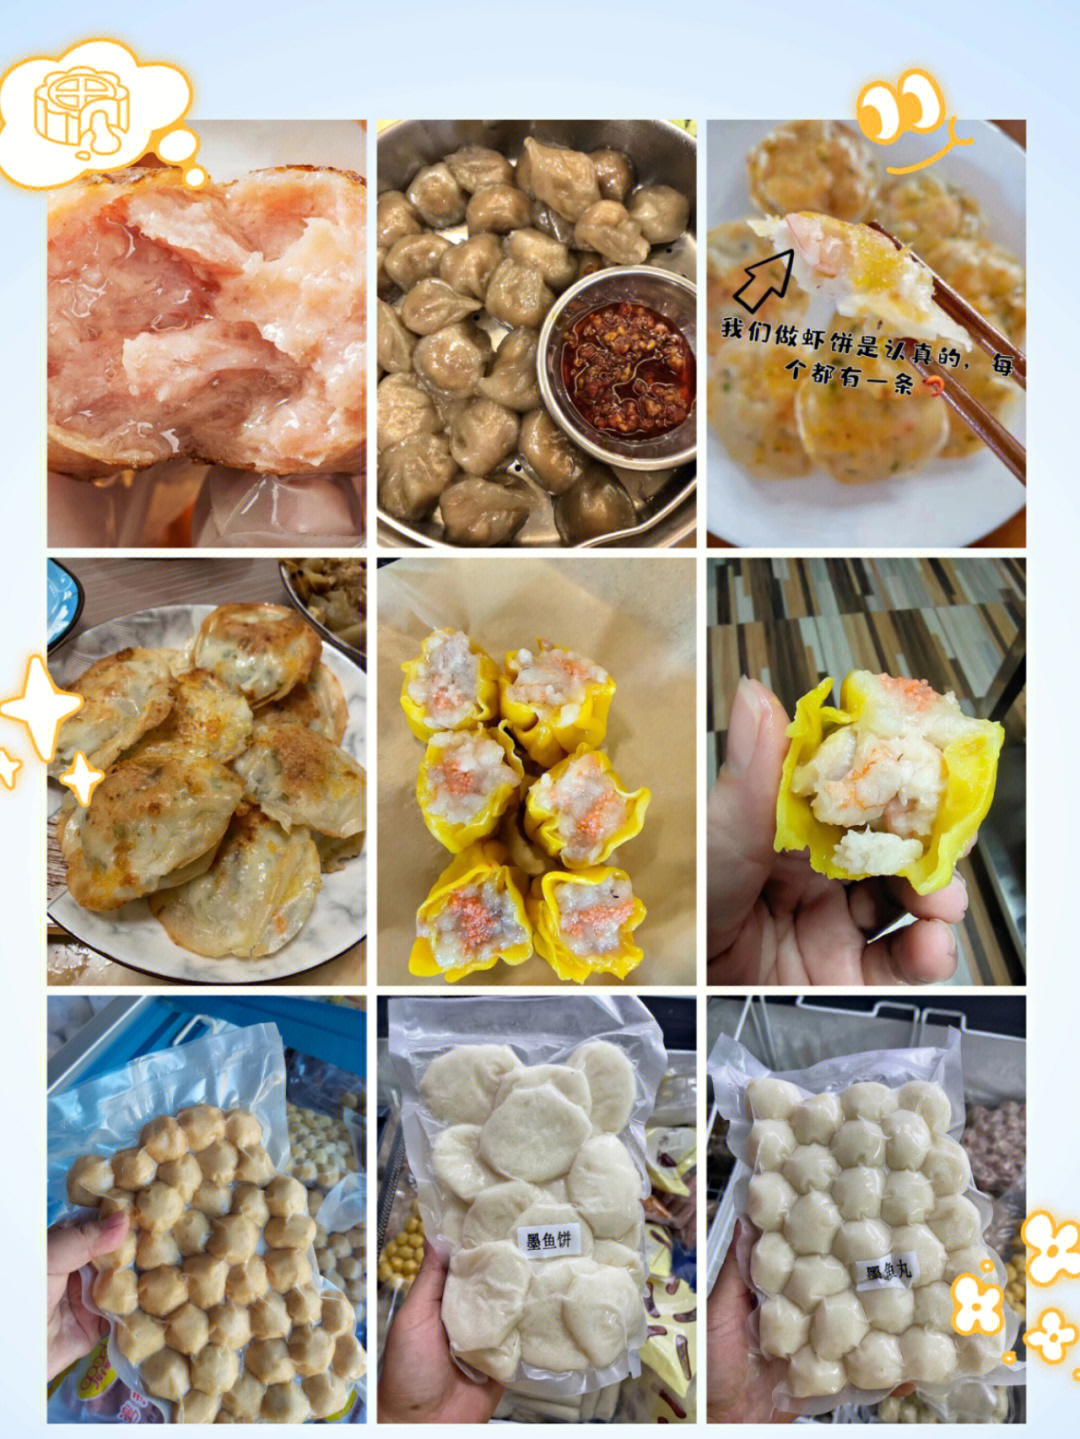 潮汕代表性美食图片